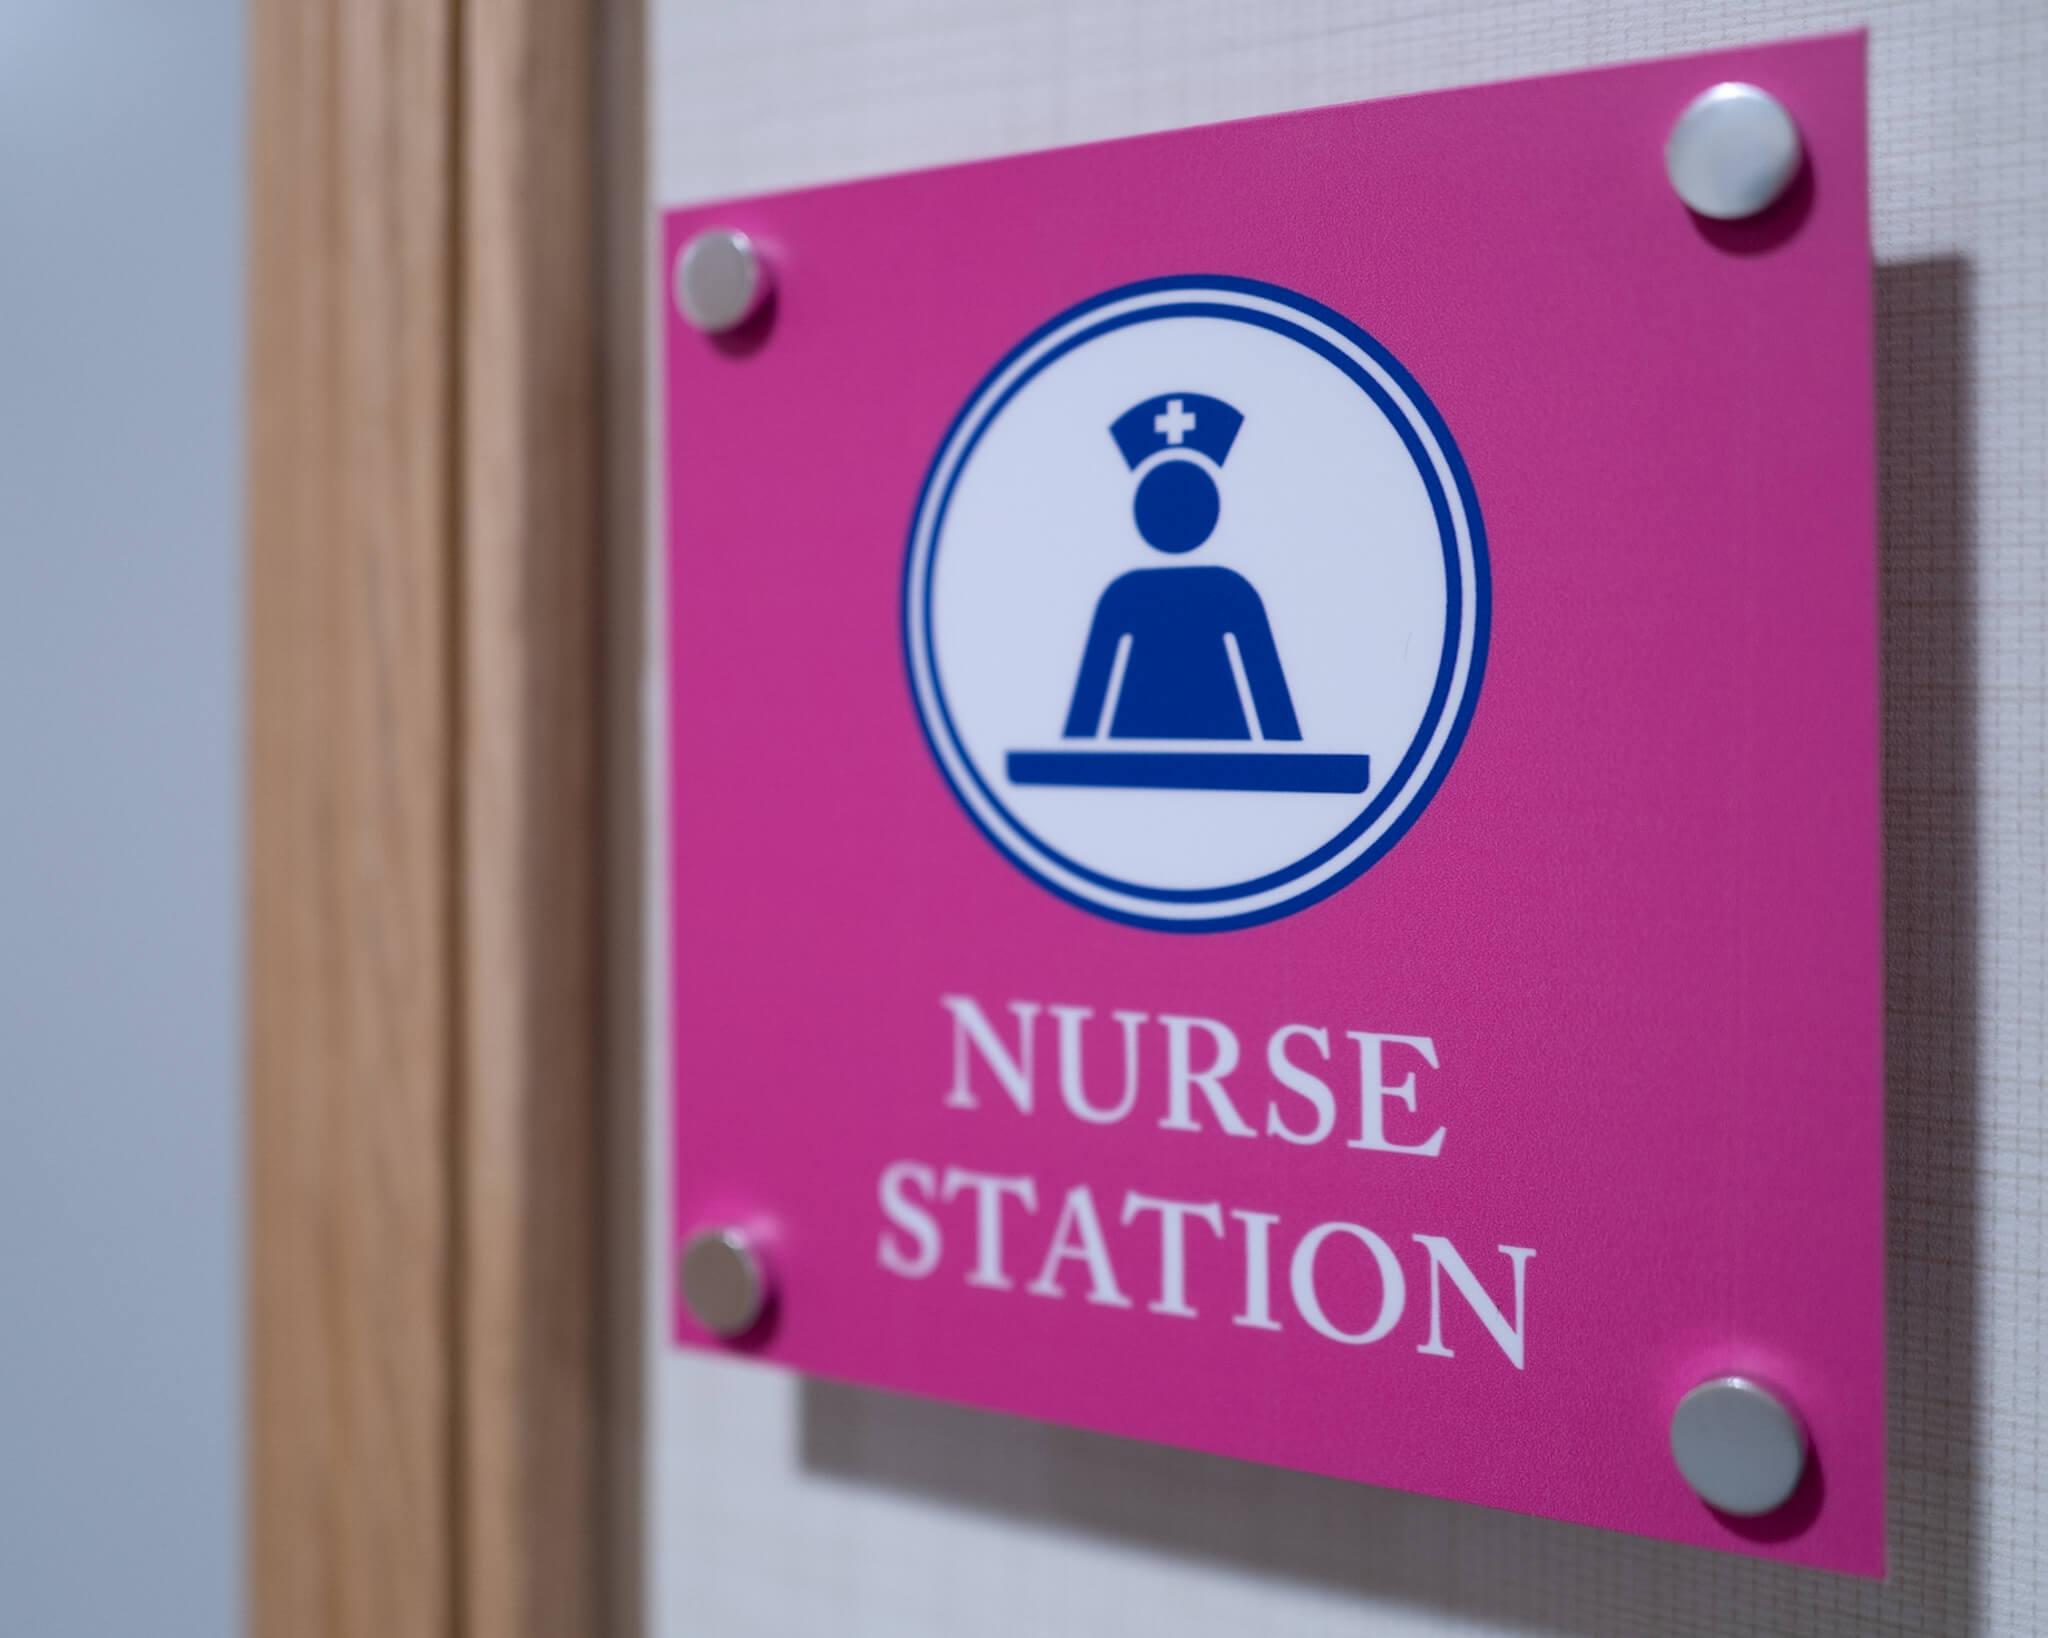 Pink sign "Nurse Station".